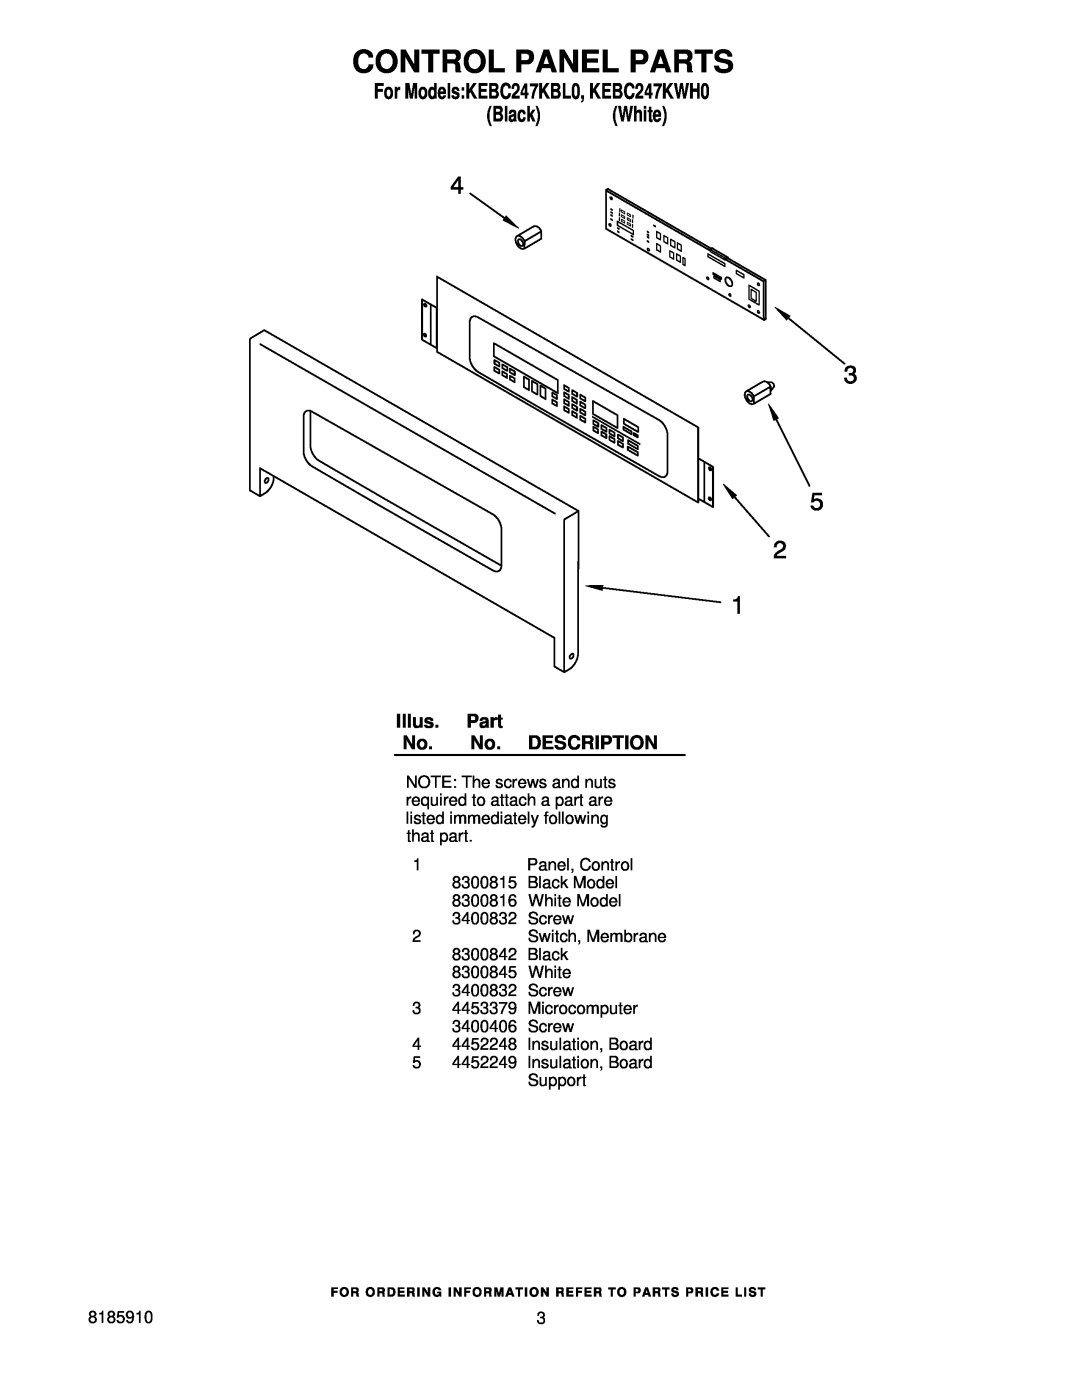 KitchenAid manual Control Panel Parts, For ModelsKEBC247KBL0, KEBC247KWH0 Black White 